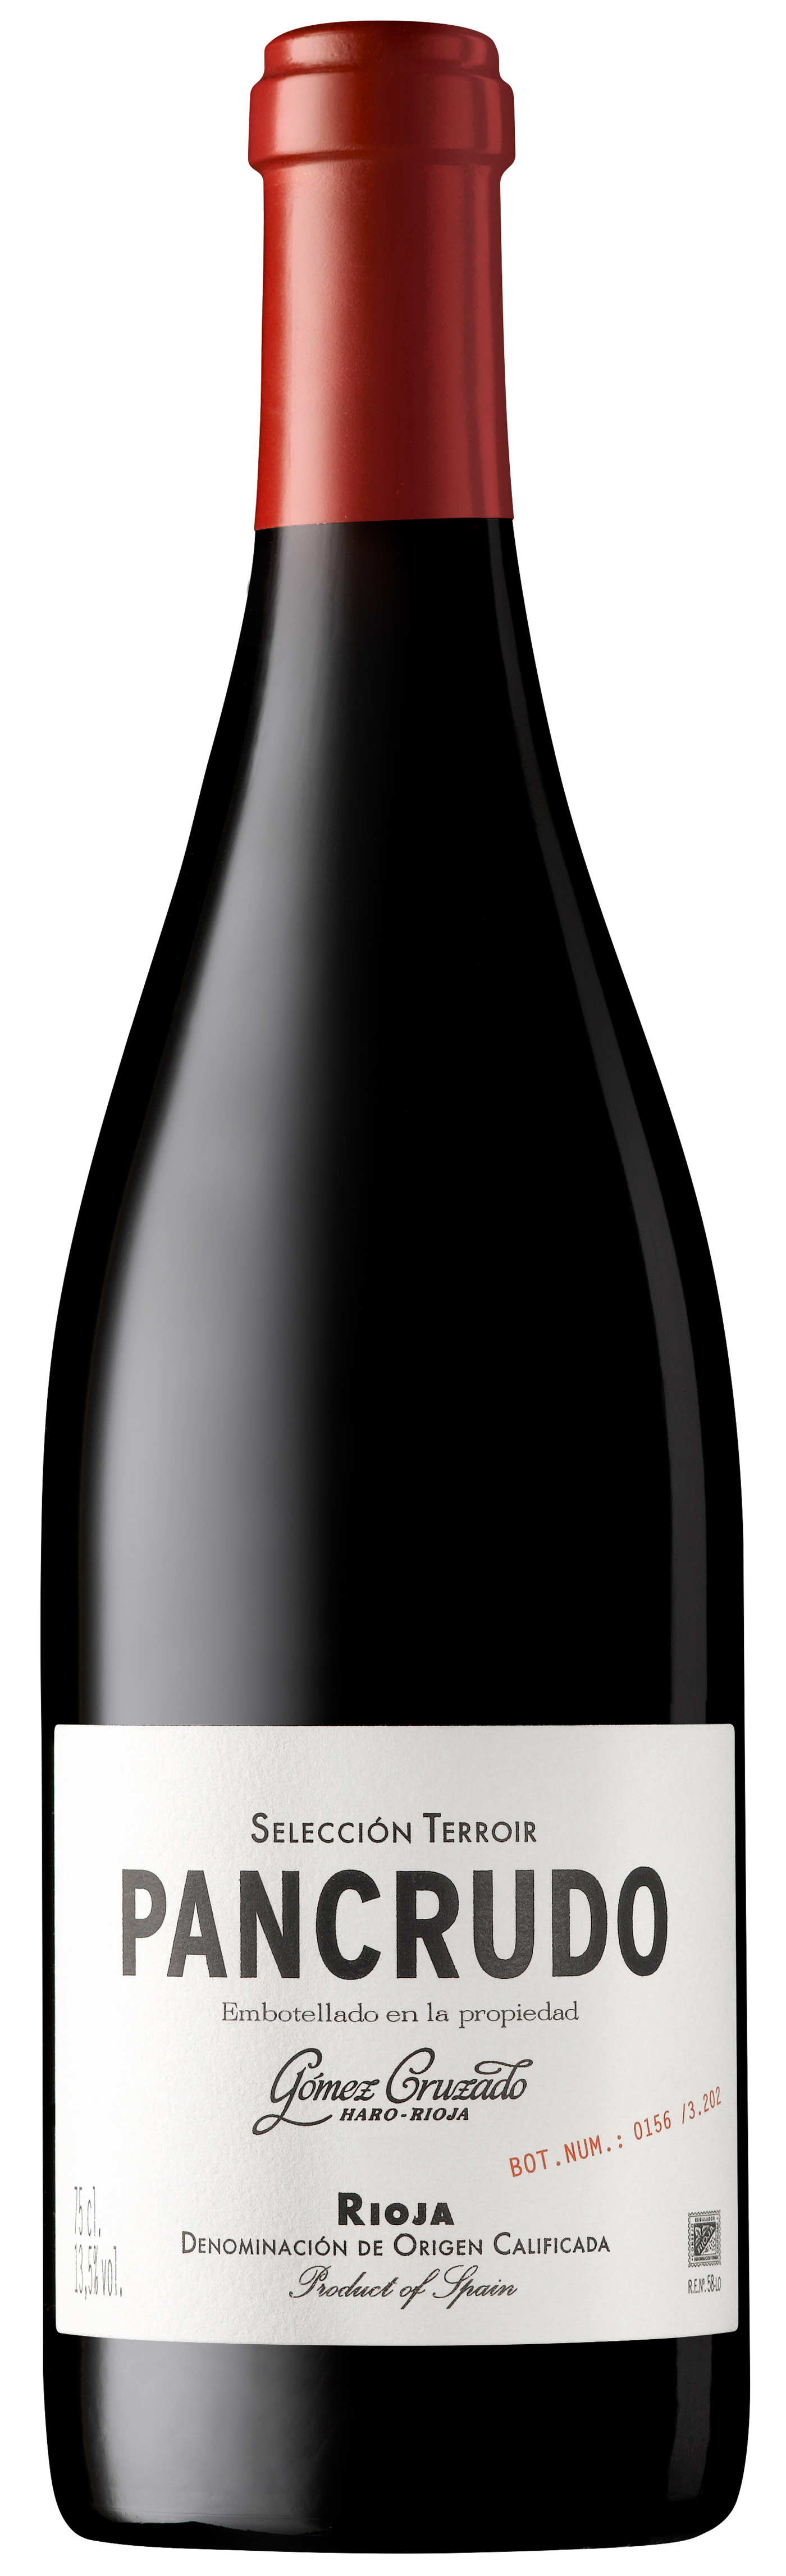 PANCRUDO "Gomez Cruzado" Rioja DOCa Terroir Selection 2019